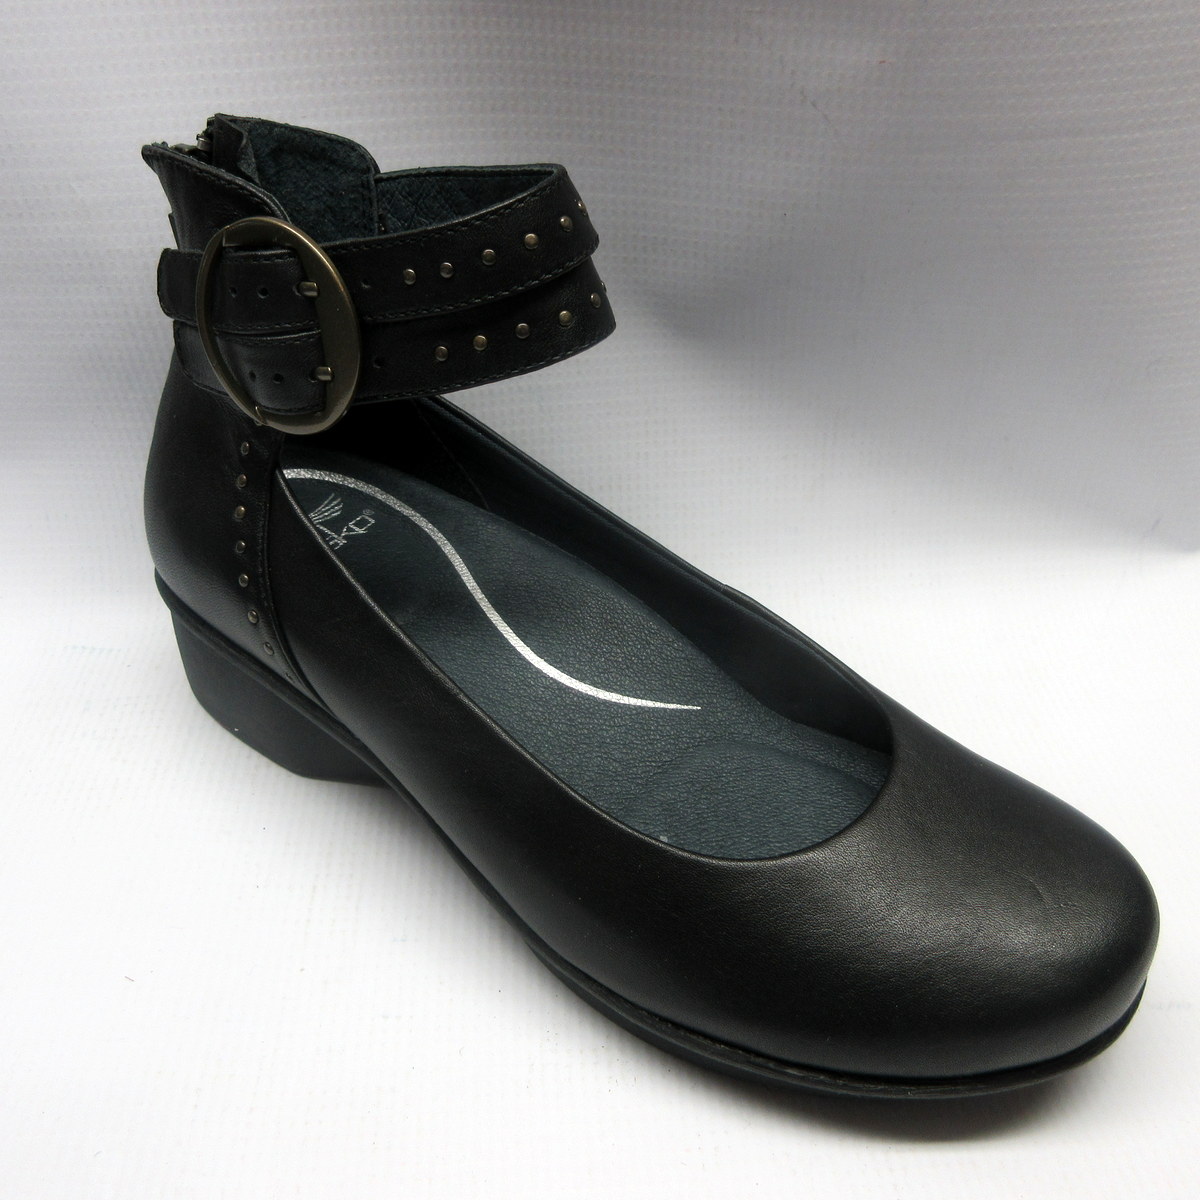 size 38 in dansko shoes